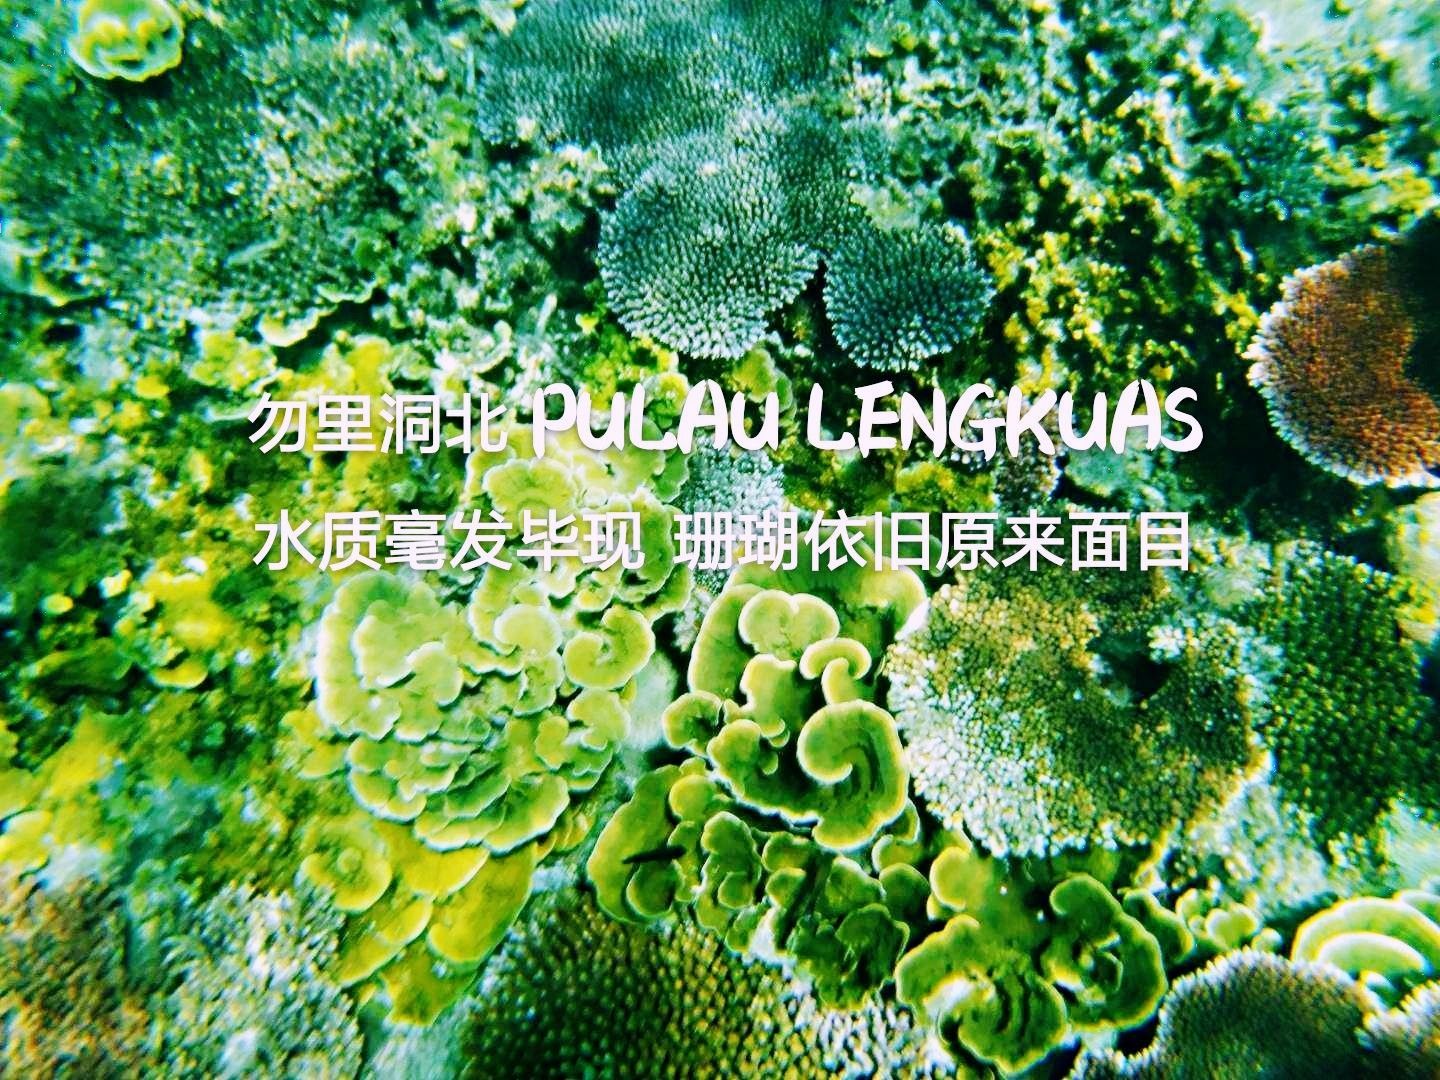 Pulau Lengkuas附近的水域，是一片保存相当完好的珊瑚礁，和爱妮岛无序开发以致日渐受创的珊